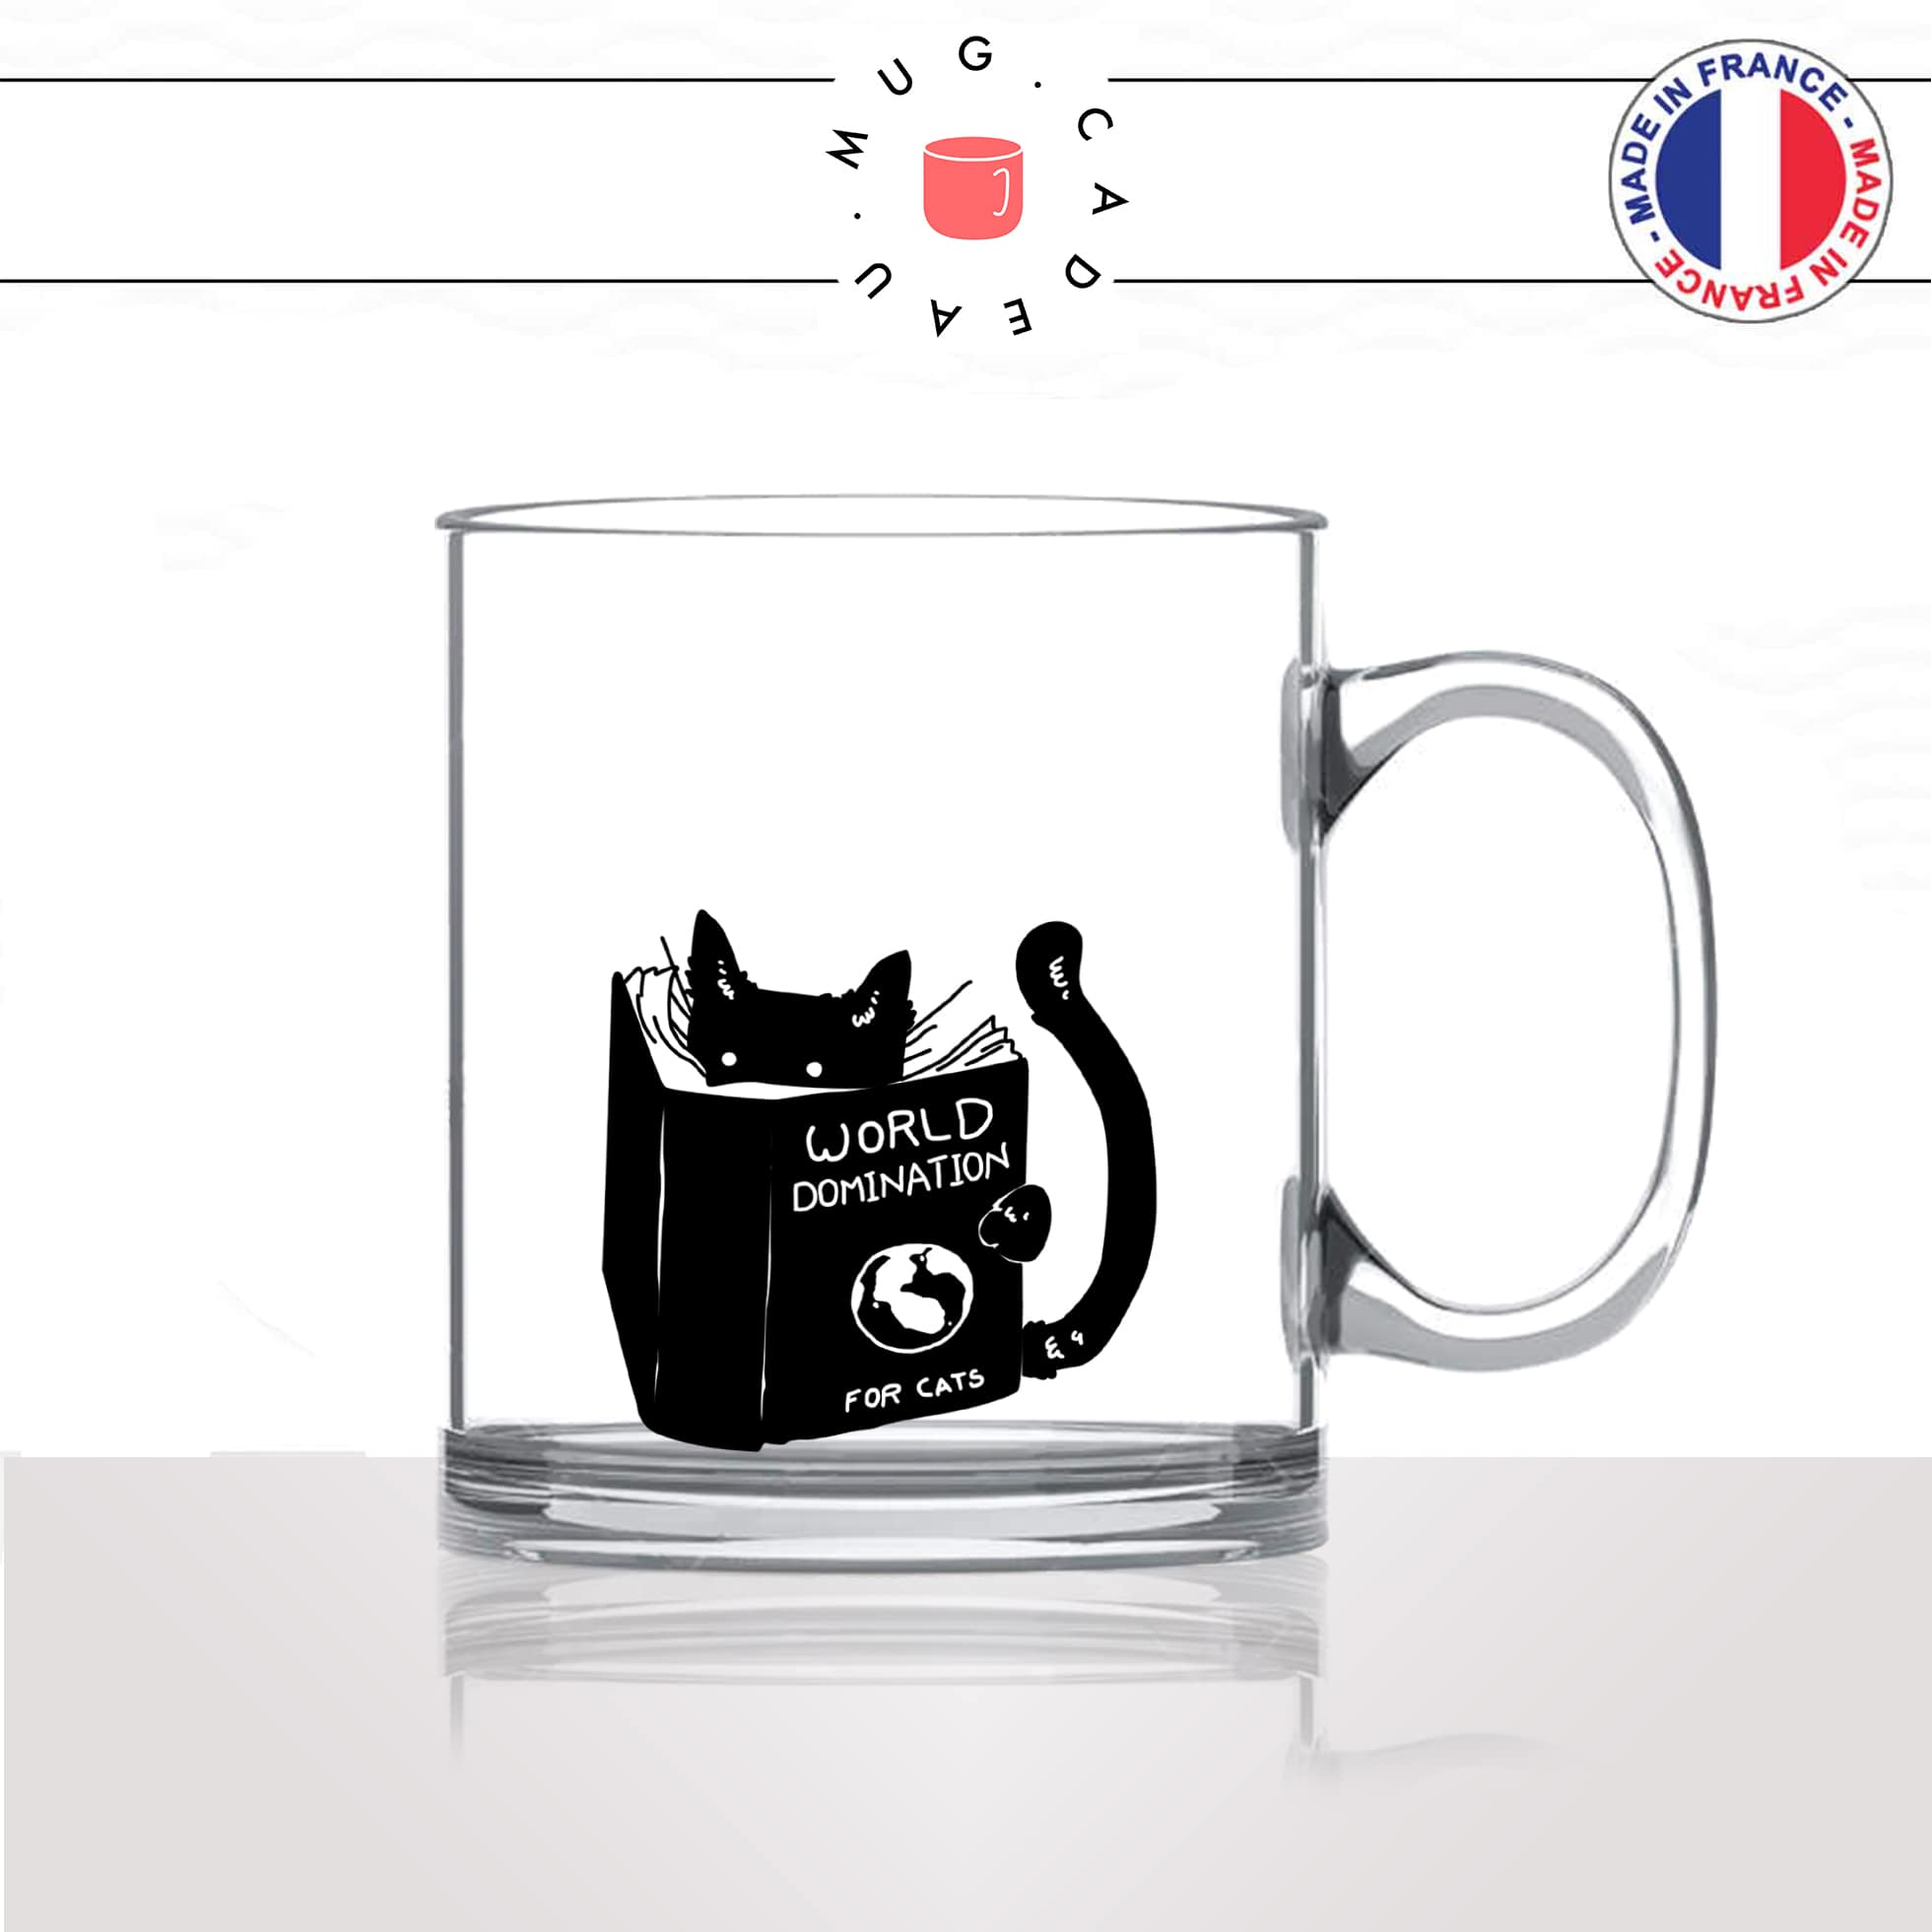 Gift Republic Cat Mug Blanc Céramique Chaton fantaisie Chats Amoureux Cadeau Tasse à café 